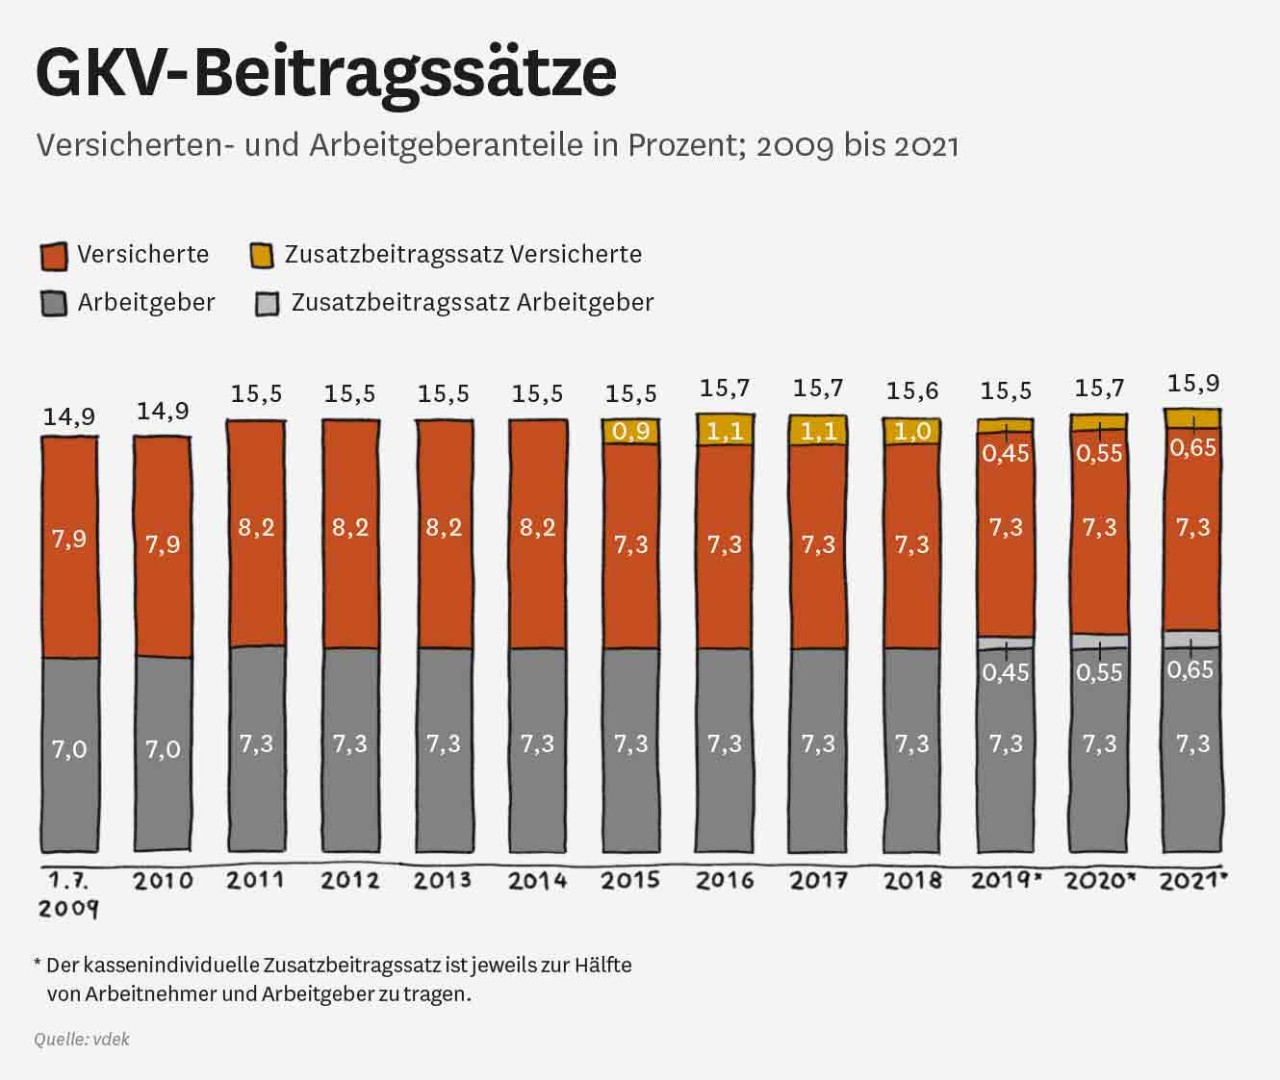 GKV-Beitragssätze zwischen 2009 und 2021